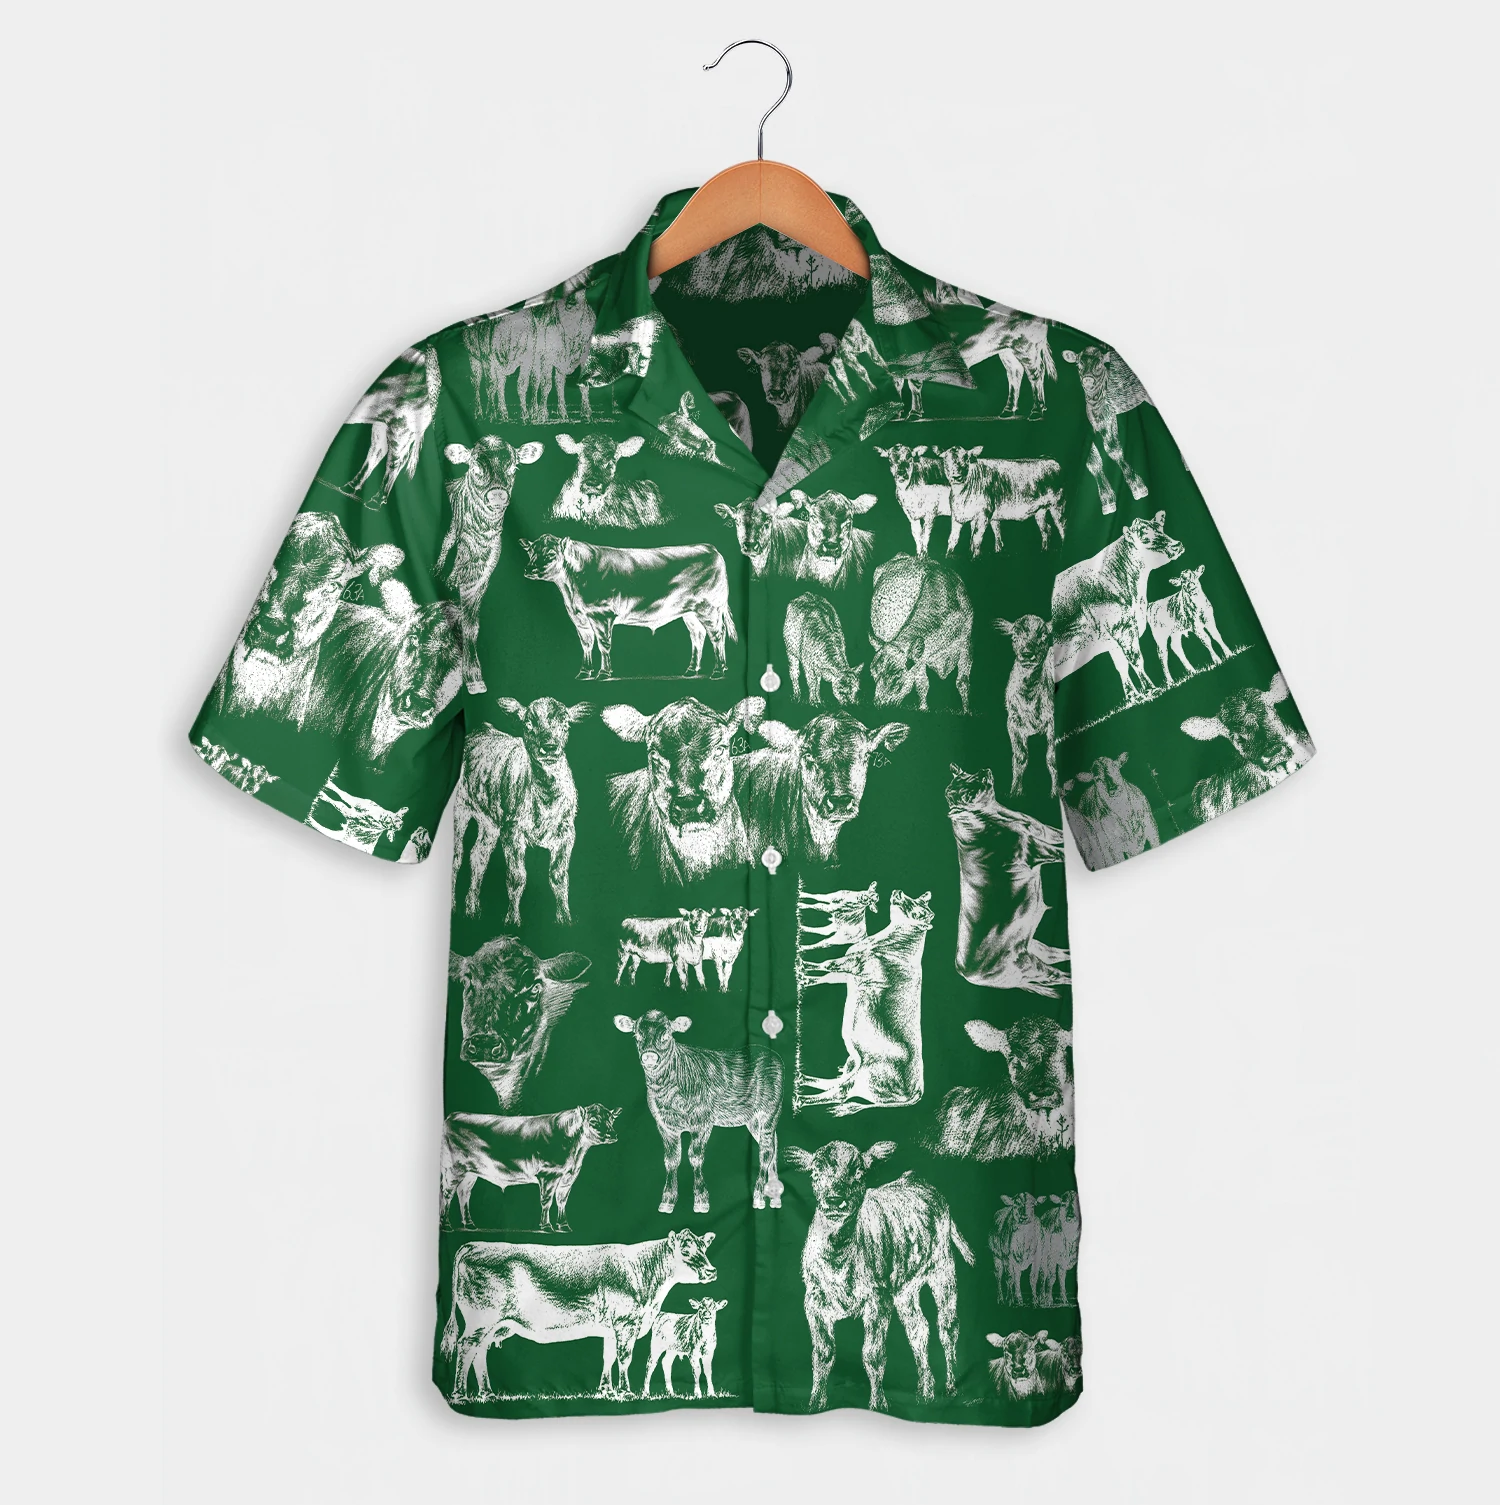 Cattle pattern blue/ red/ green Hawaiian Shirt/ Summer gift/  Short Sleeve Aloha Beach Shirt